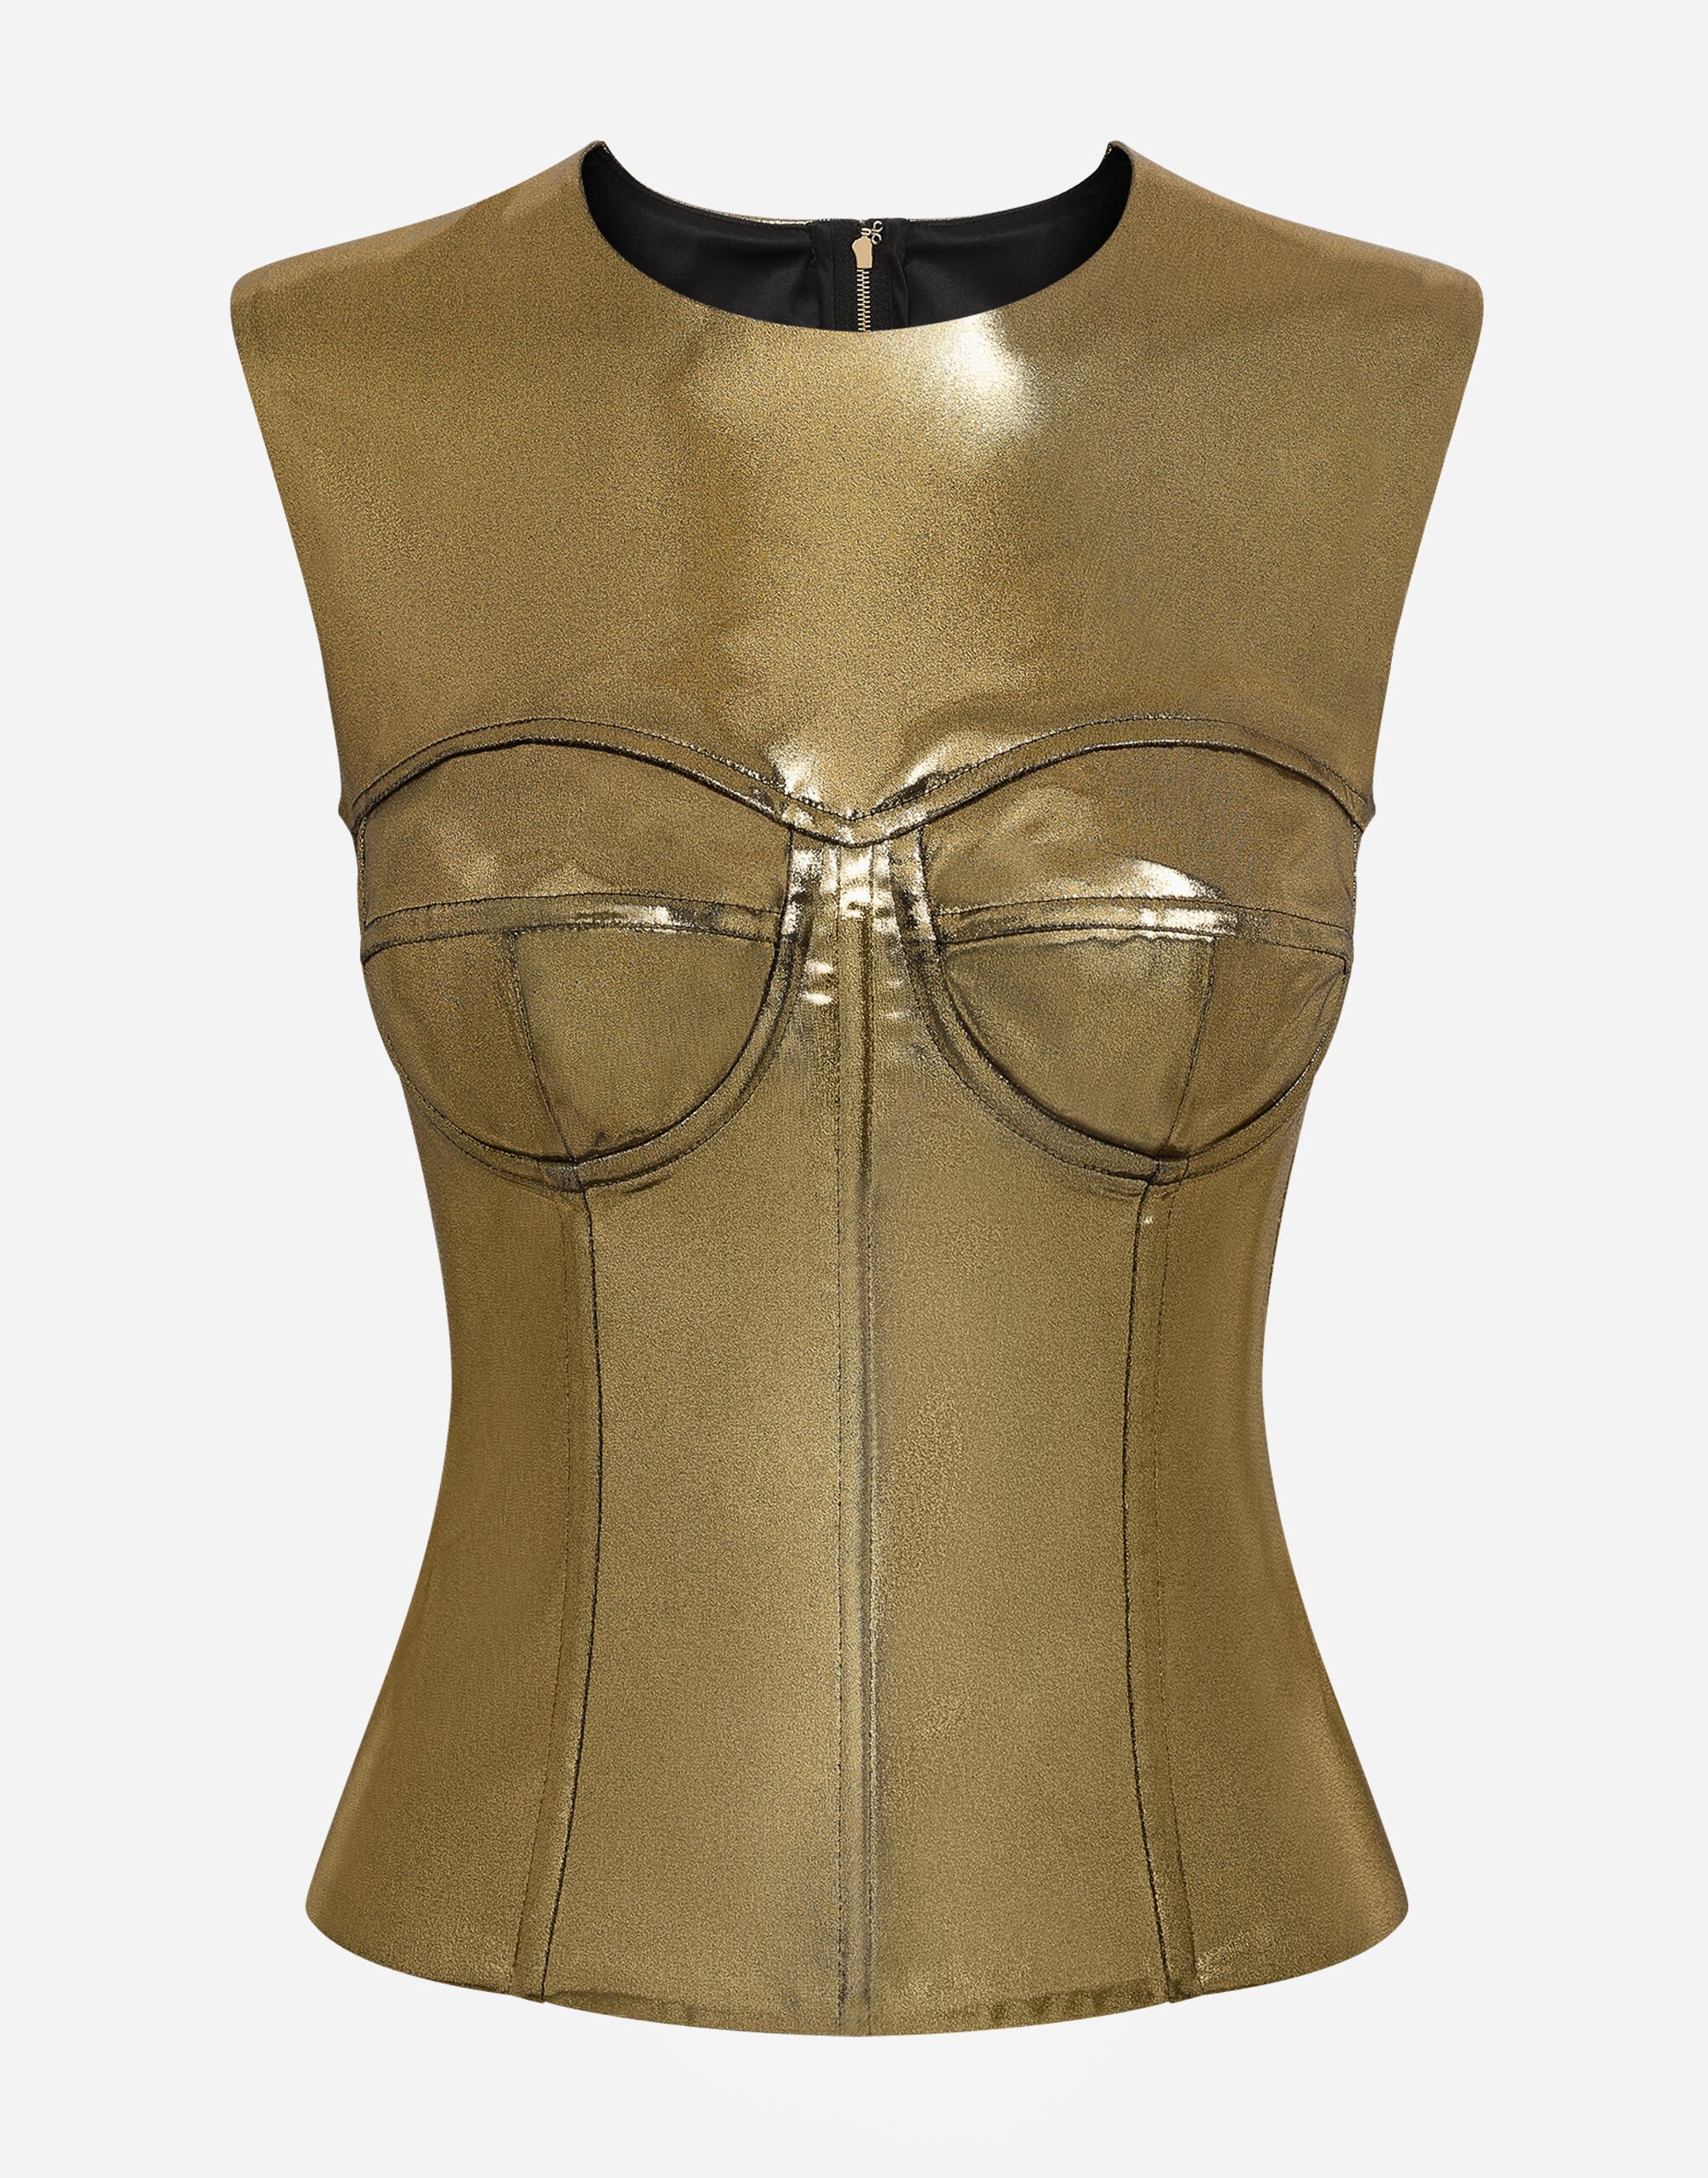 Dolce & Gabbana Short foiled satin corset top Gold F79AATFLMII